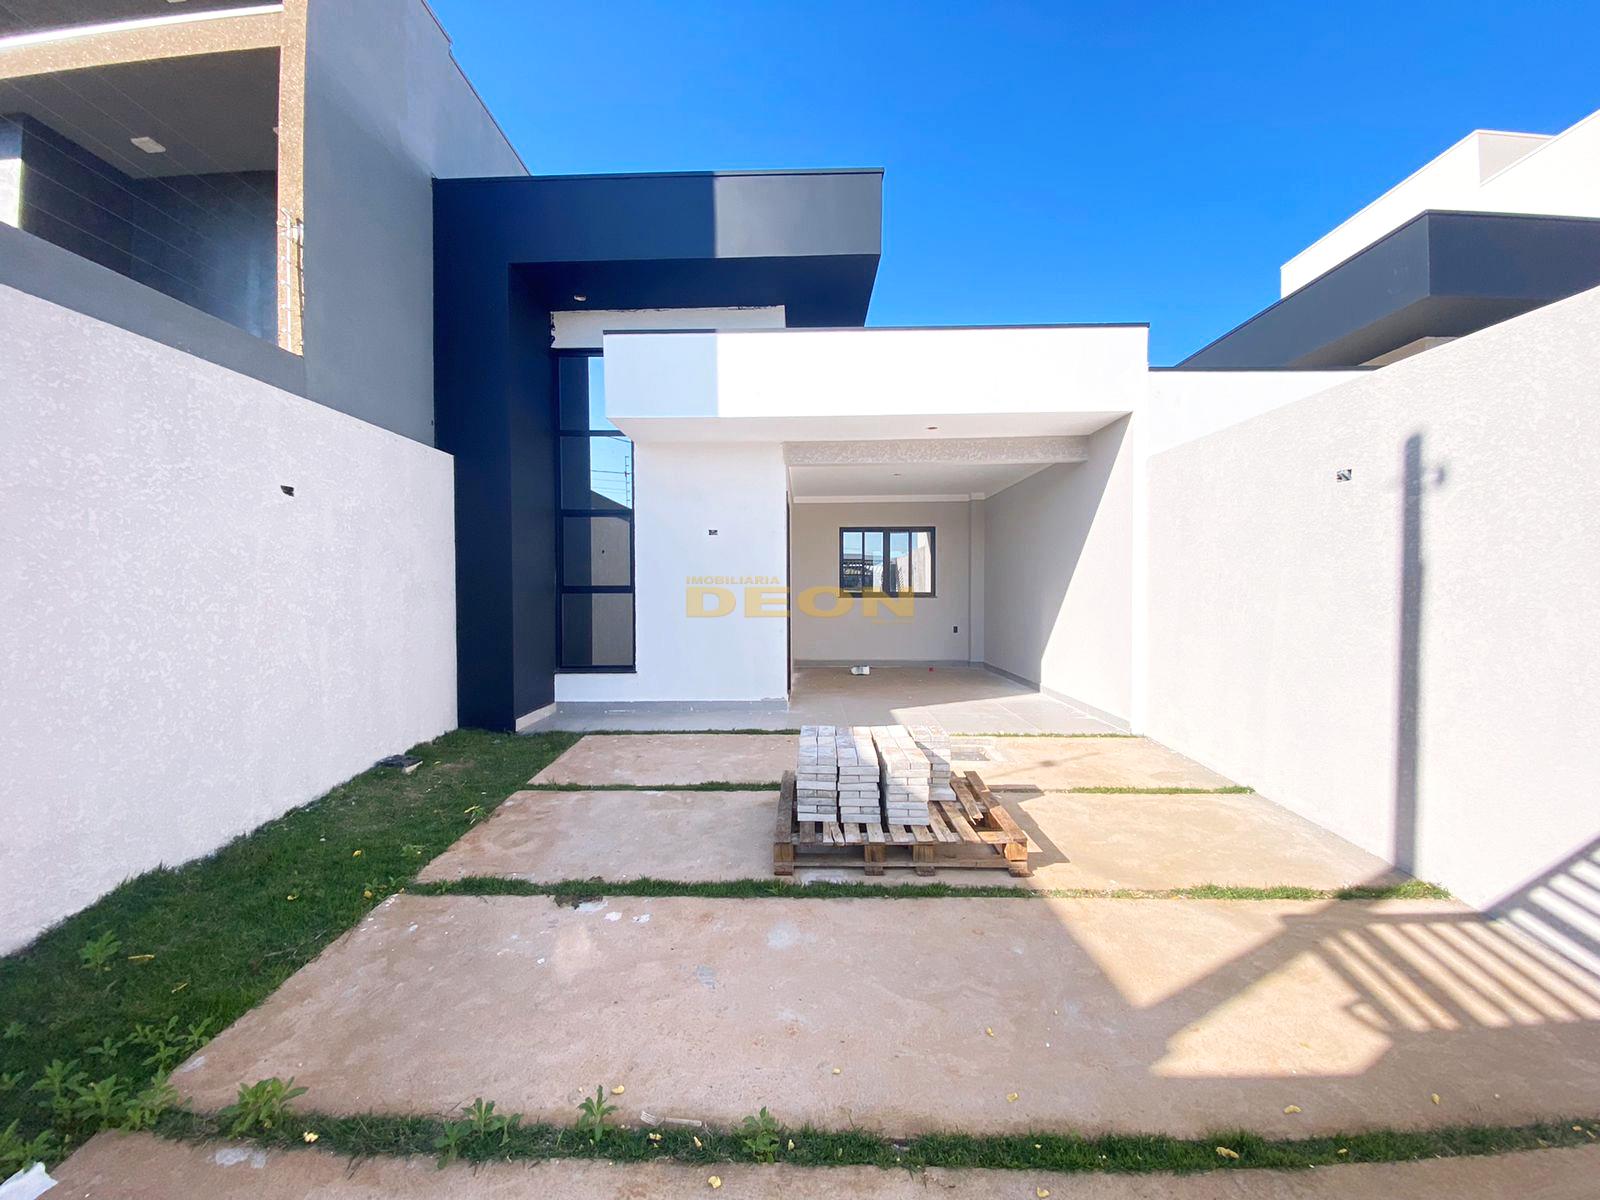 Casa com 3 dormitórios à venda,180.00 m², Veredas, CASCAVEL - PR